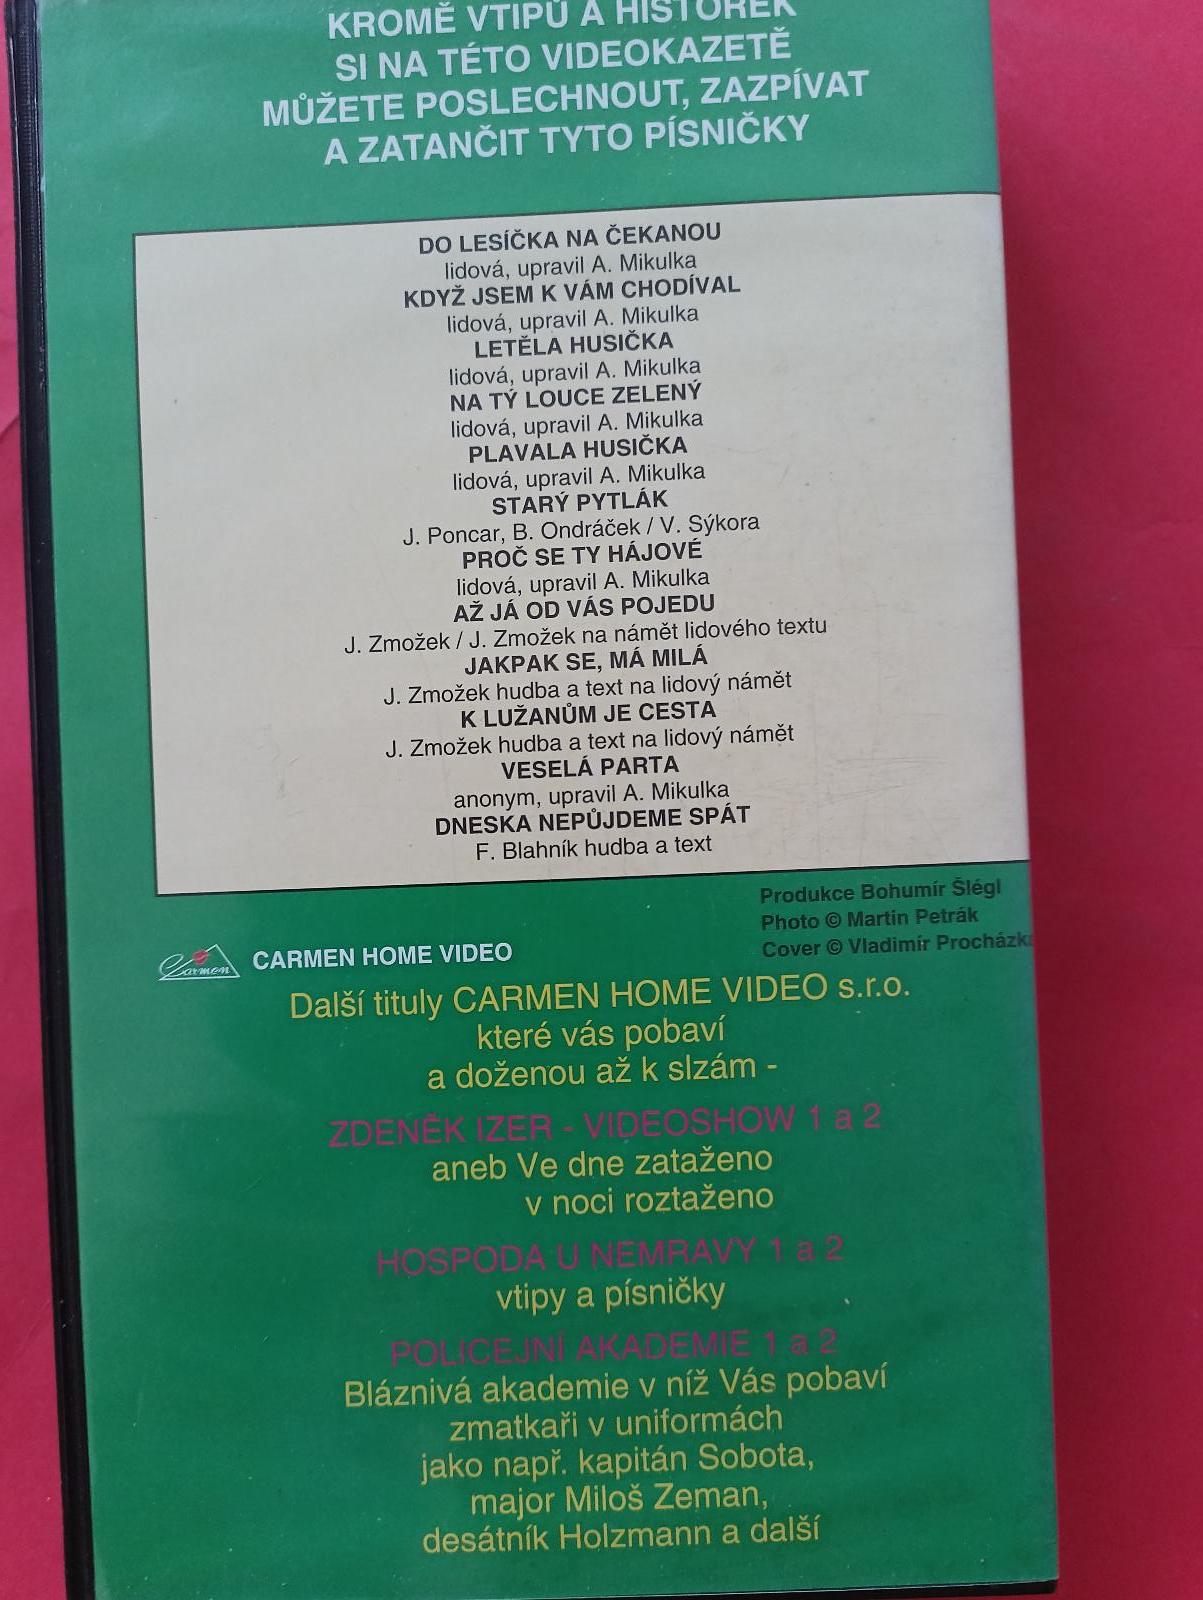 VHS Myslivecká video hitparáda (nakl.Carmen) - Film